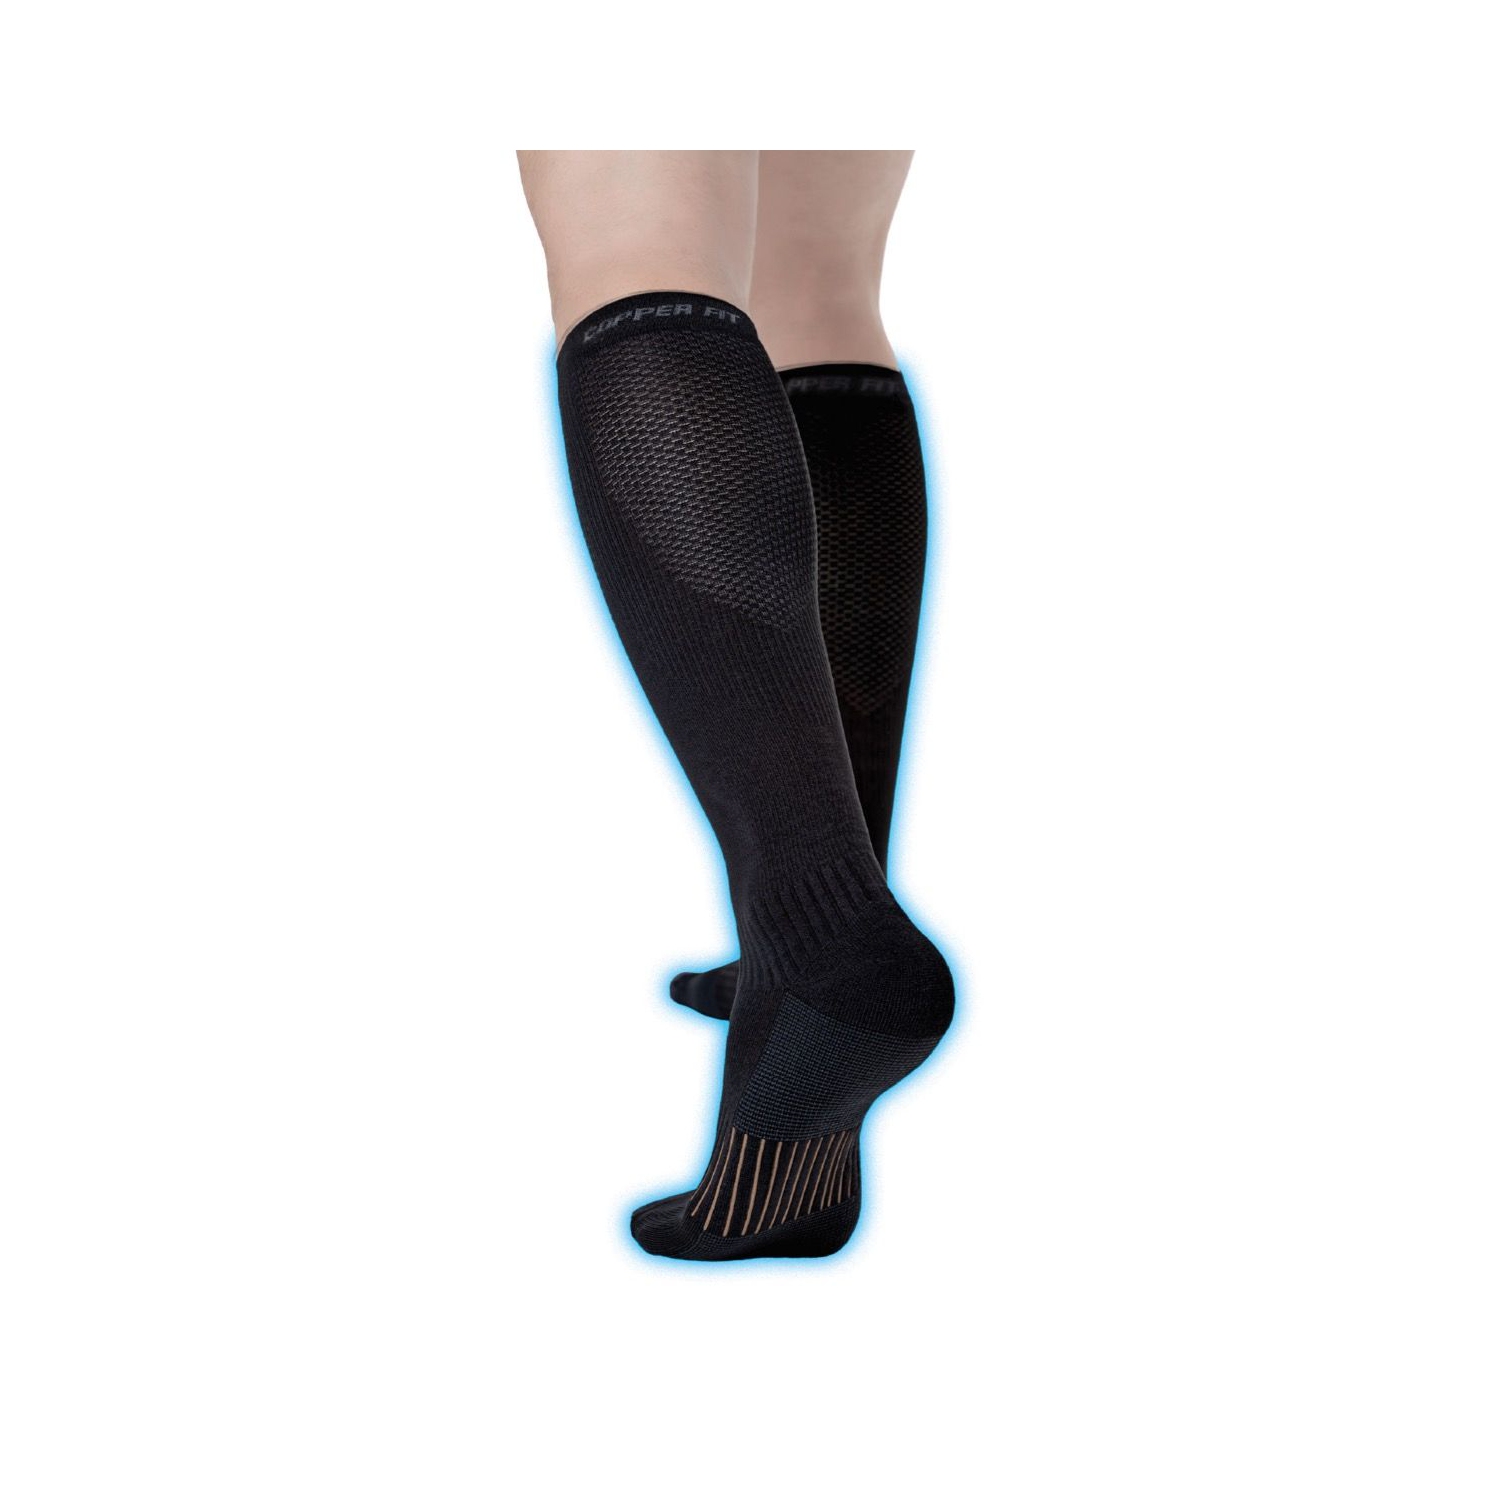 Compression Socks – Healthwick Canada